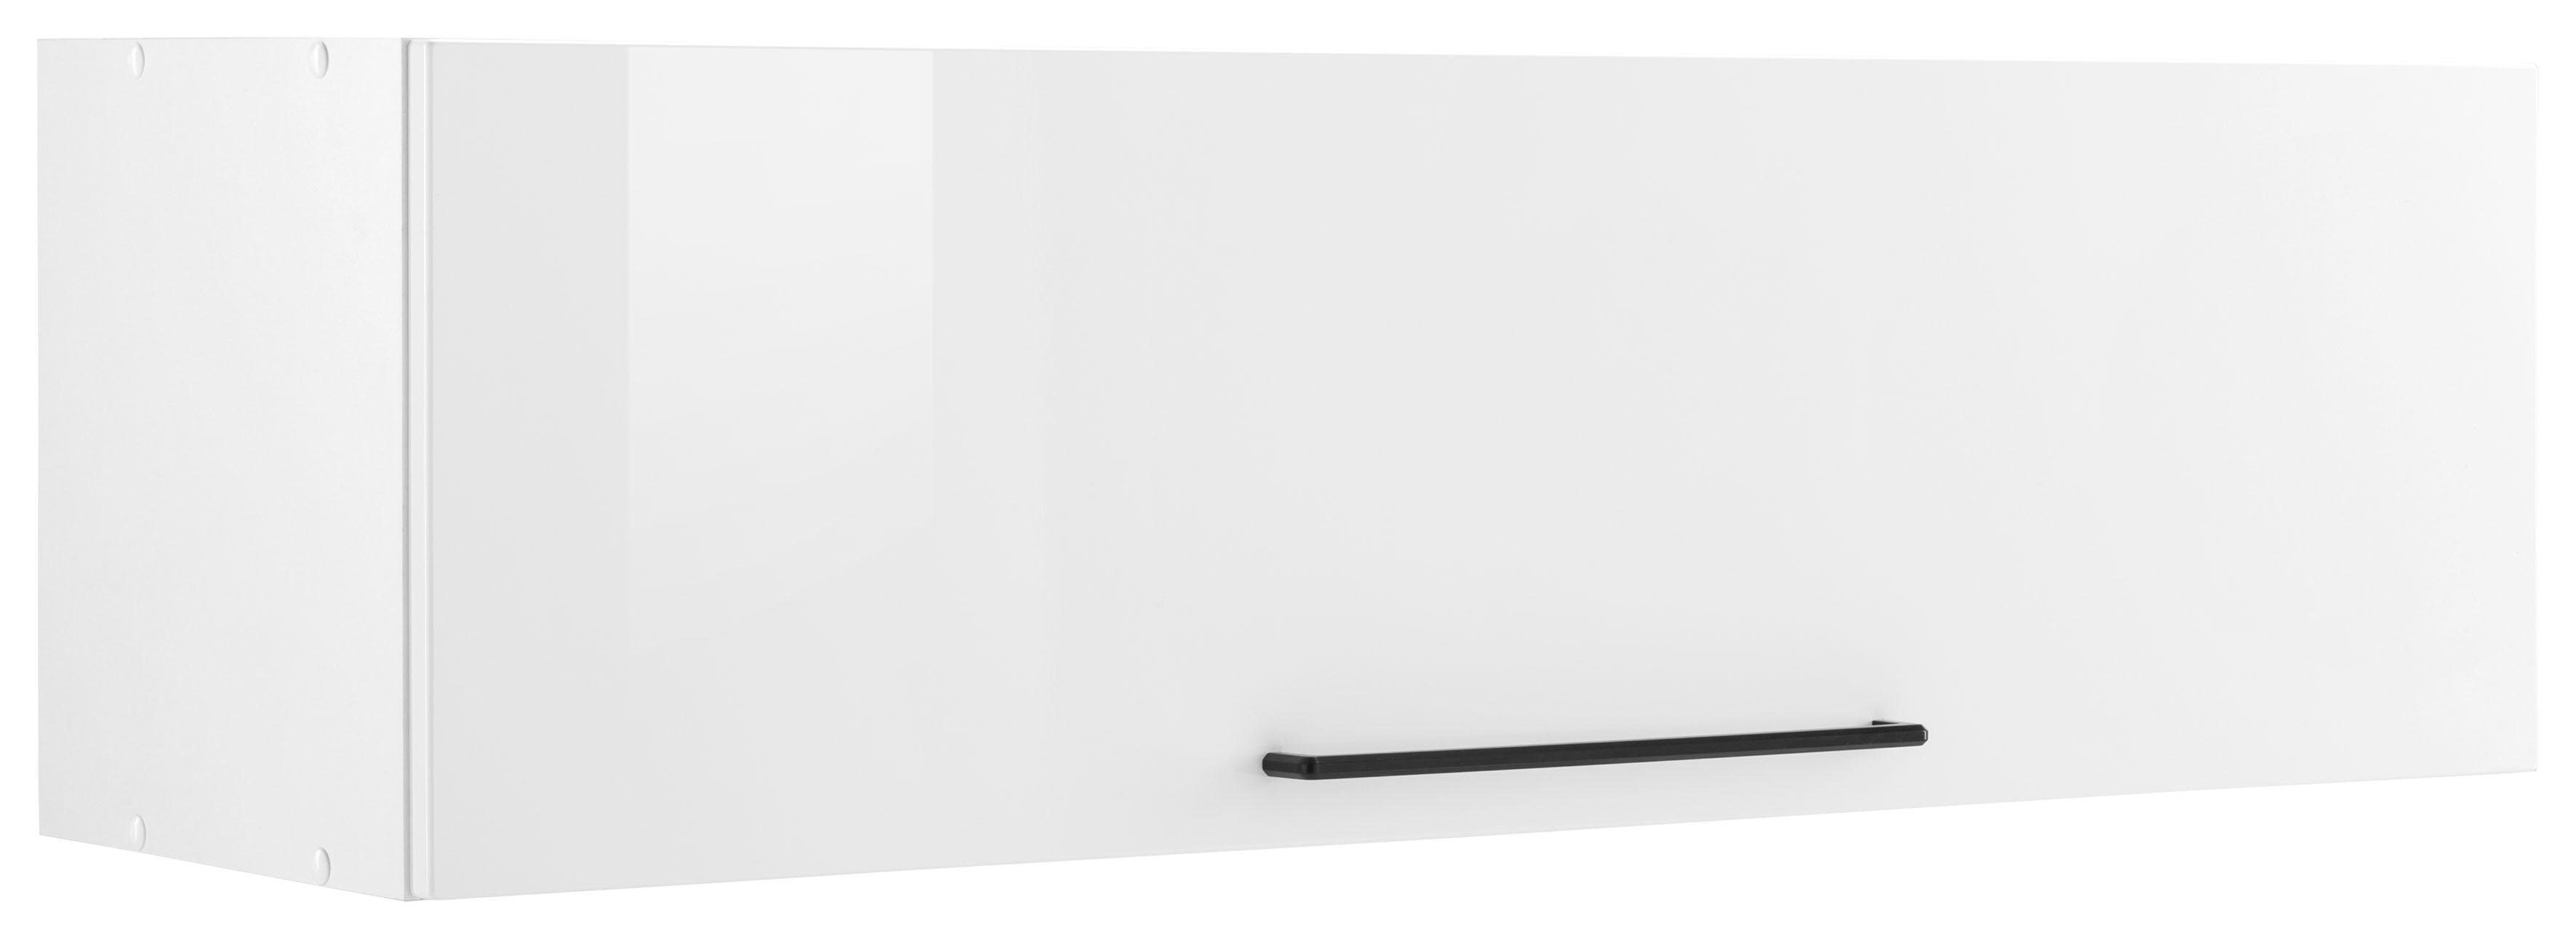 HELD MÖBEL Klapphängeschrank Tulsa 110 cm breit, mit 1 Klappe, schwarzer Metallgriff, MDF Front weiß Hochglanz | weiß